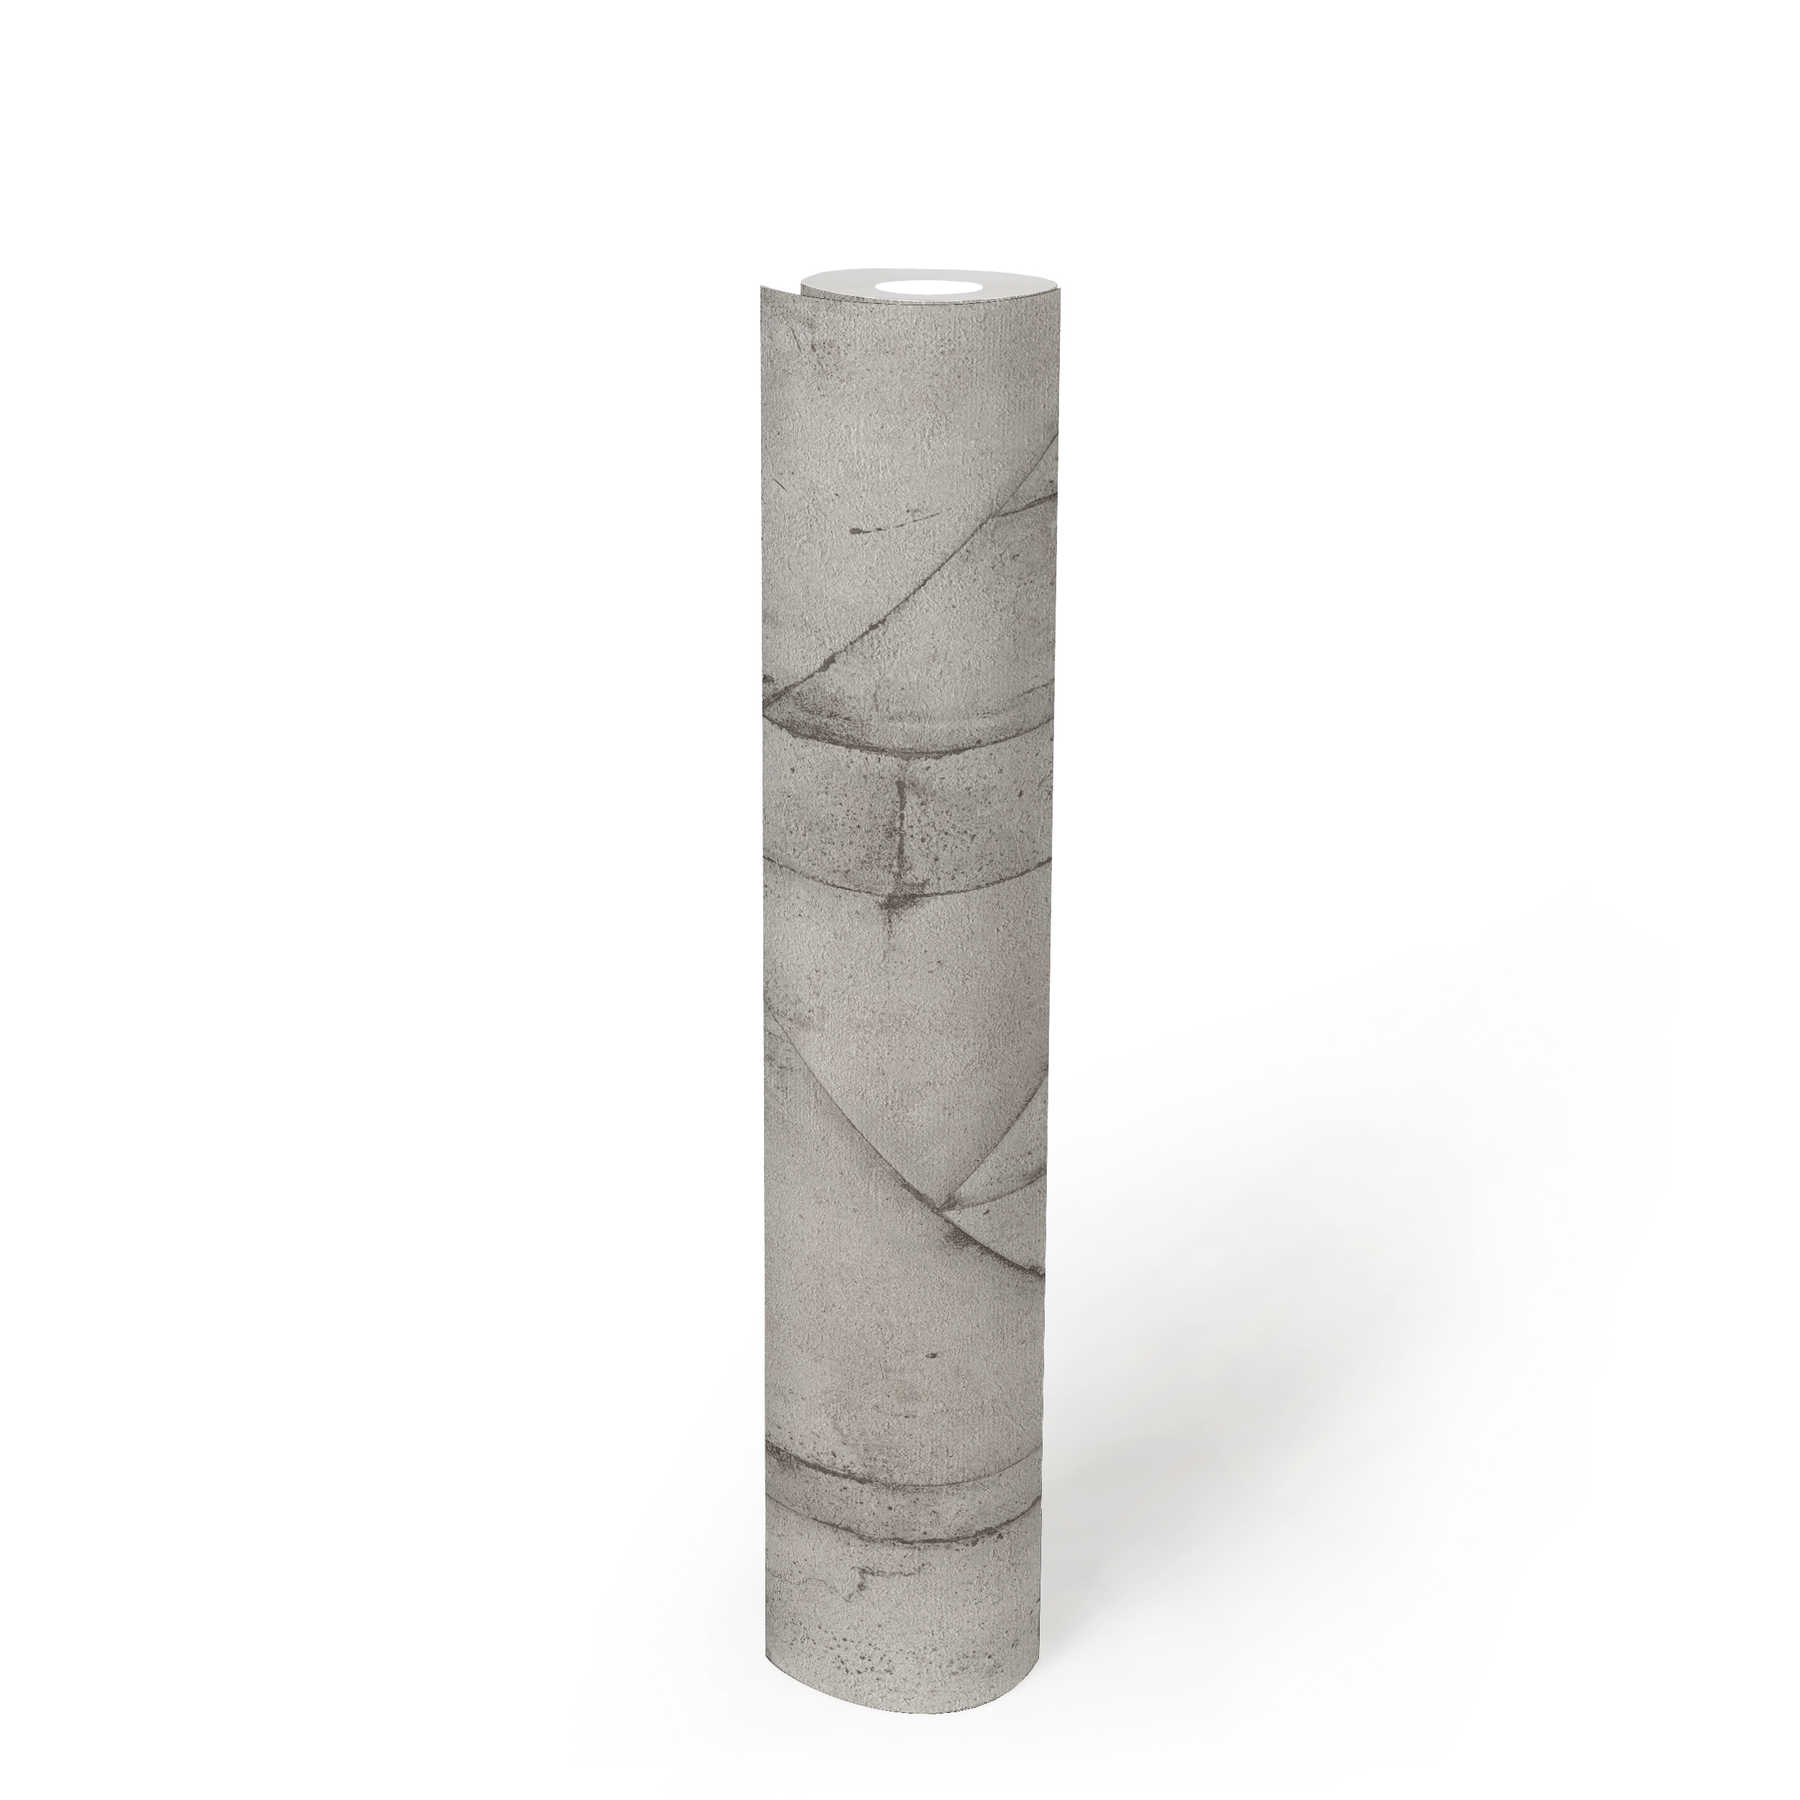             Piastrelle di carta da parati in cemento, aspetto usato - grigio, bianco, antracite
        